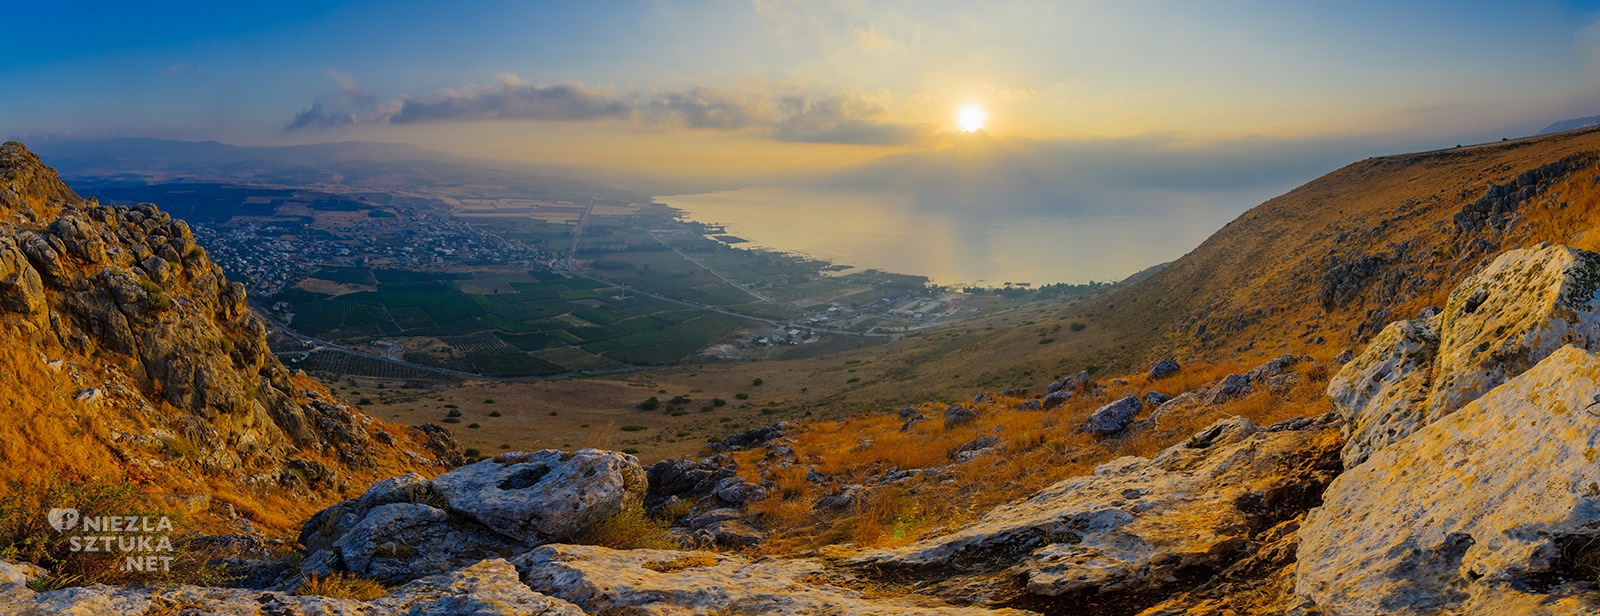 Jezioro Galilejskie, Jezioro Tyberiadzkie, Genezaret, Izrael, niezła sztuka